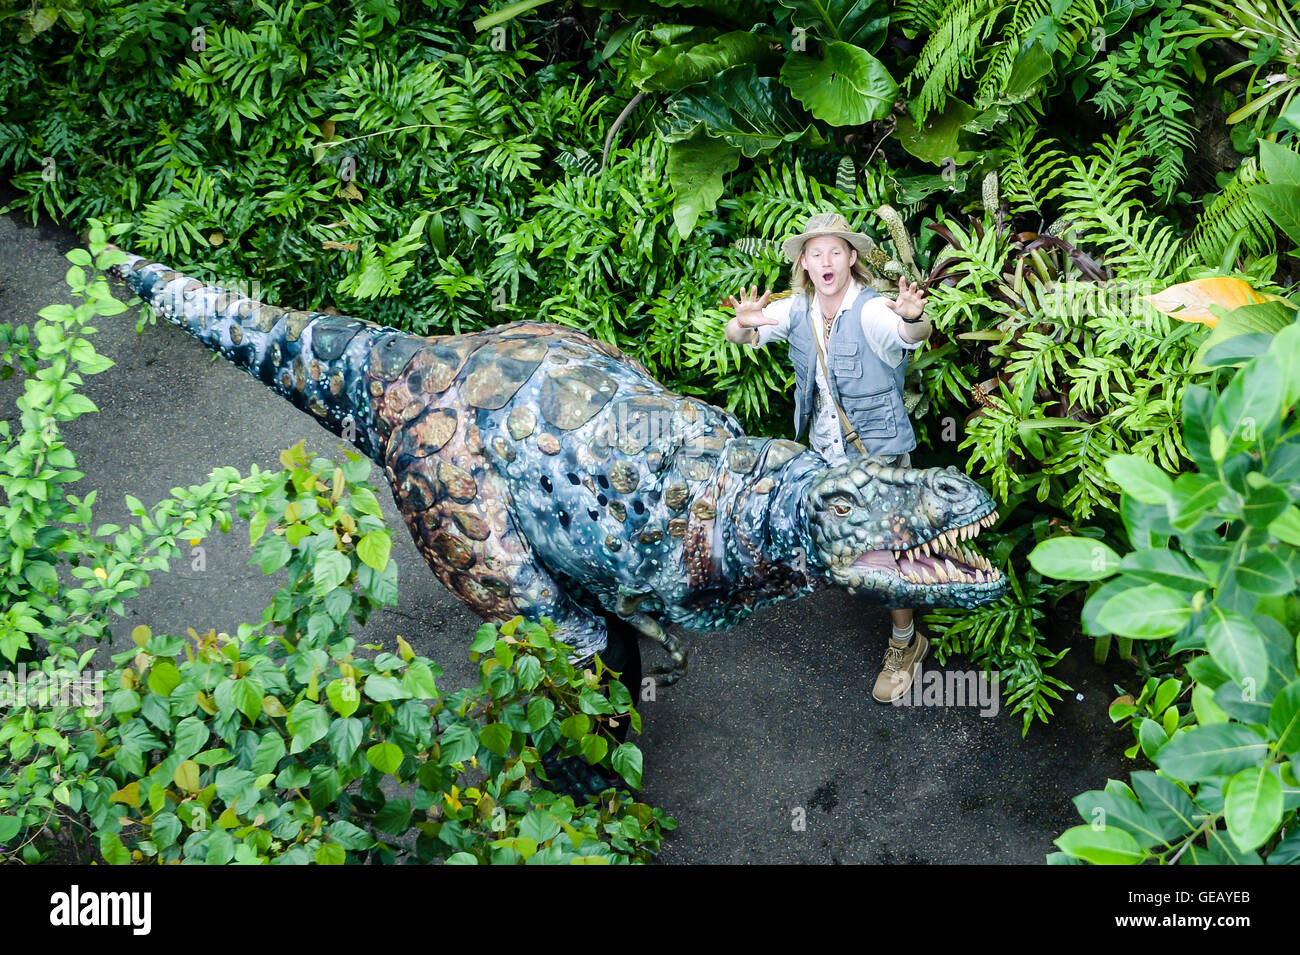 Dinosaurier-Wrangler Robert Copeland entlockt eine Mensch betriebene Marionette eines T-Rex um die Rainforest Biome im Eden Project, Cornwall, zu Beginn einer wochenlangen prähistorischen Invasion genannt Dinosaurier Aufstand, wo realistische Puppen im Garten herumlaufen werden. Stockfoto